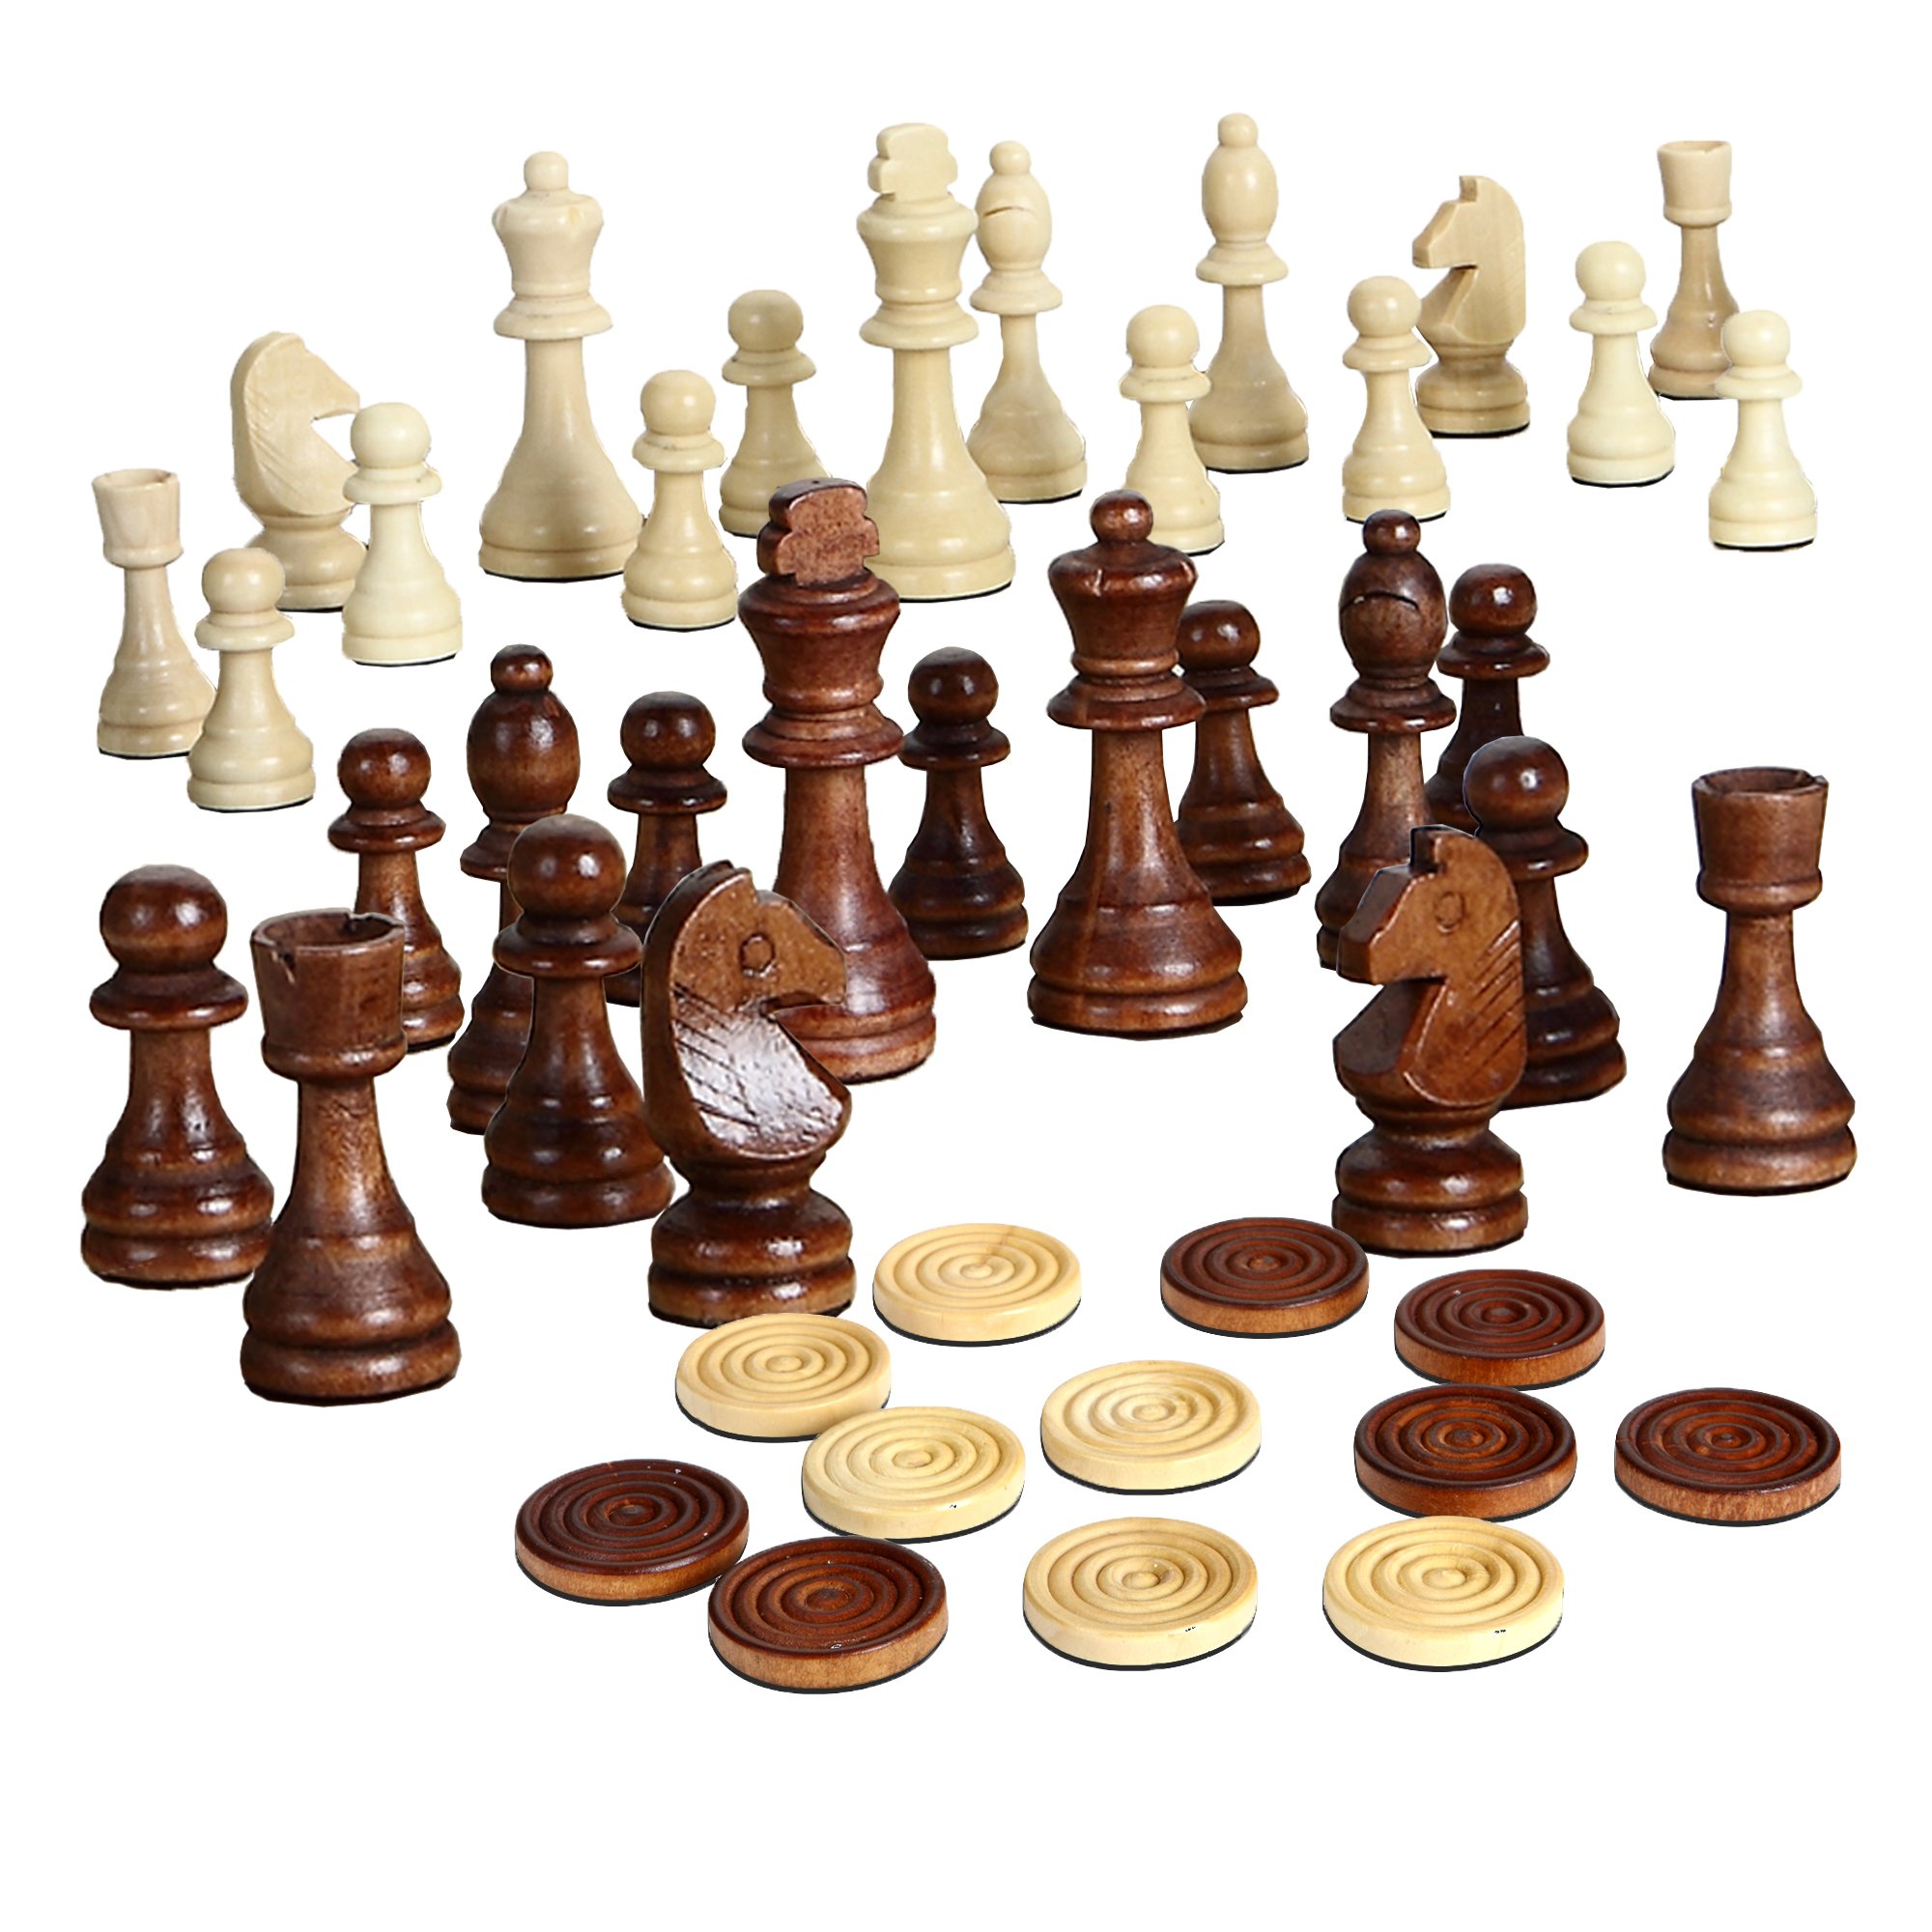 Hathaway Prodigy Wood Chess & Checkers Set Walnut